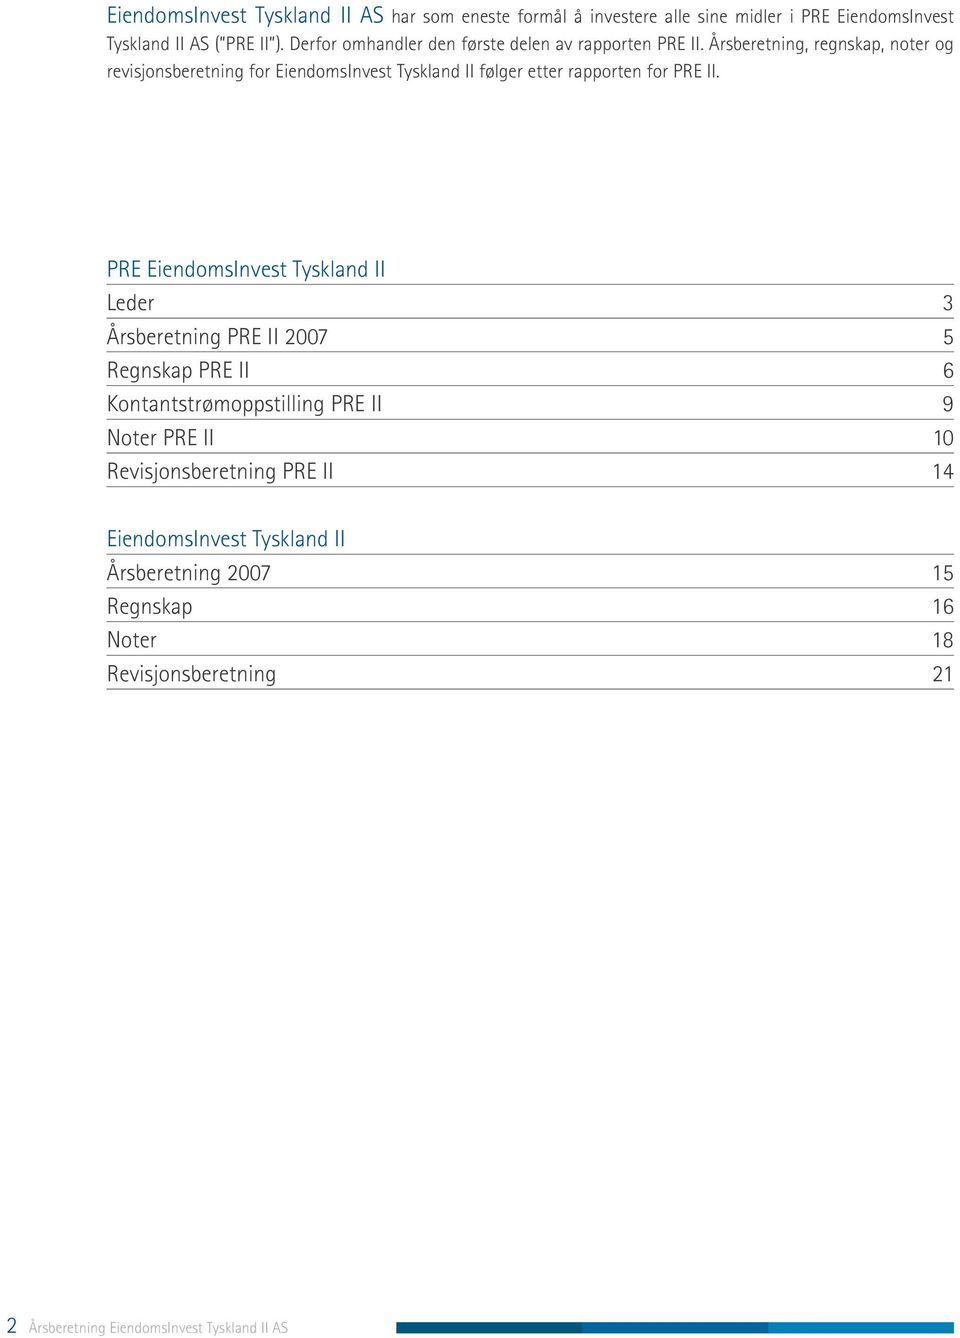 Årsberetning, regnskap, noter og revisjonsberetning for EiendomsInvest Tyskland II følger etter rapporten for PRE II.